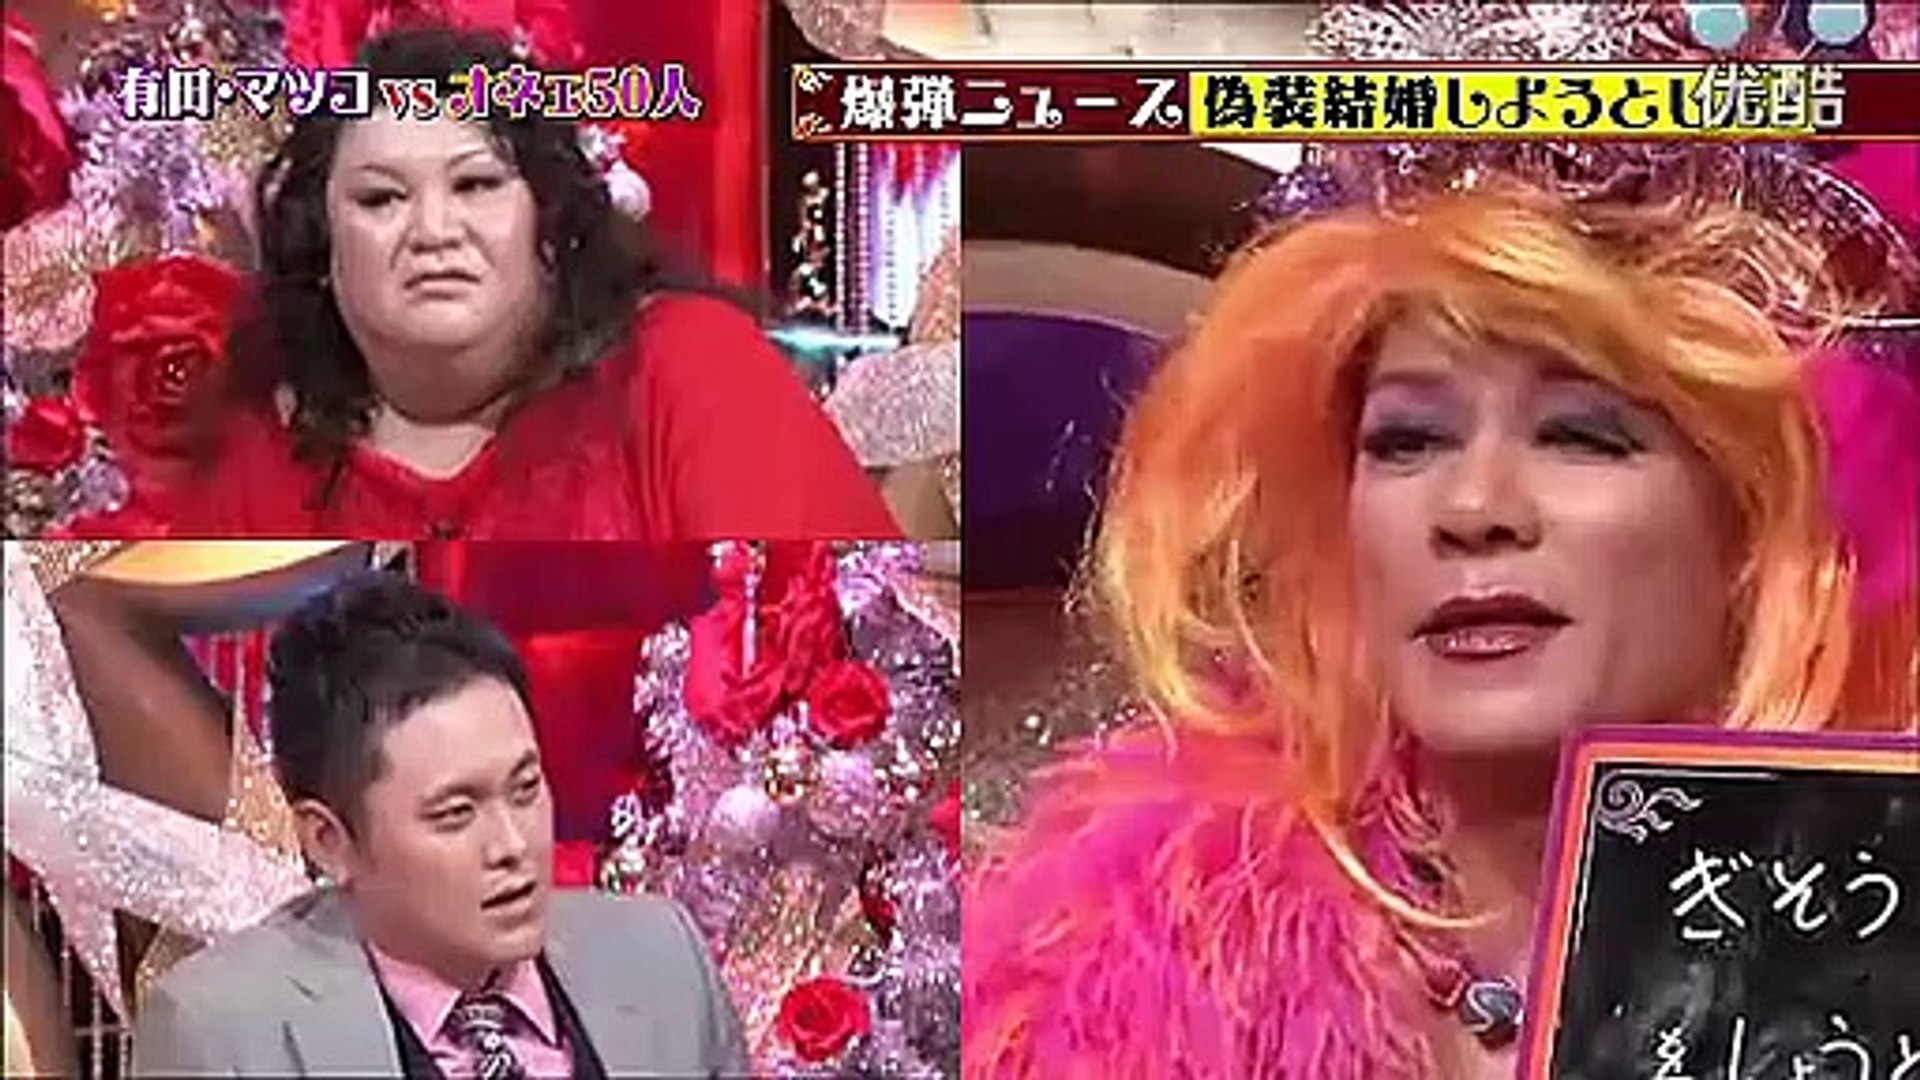 有田とマツコと男と女sp 11 12 Part2 動画 Dailymotion